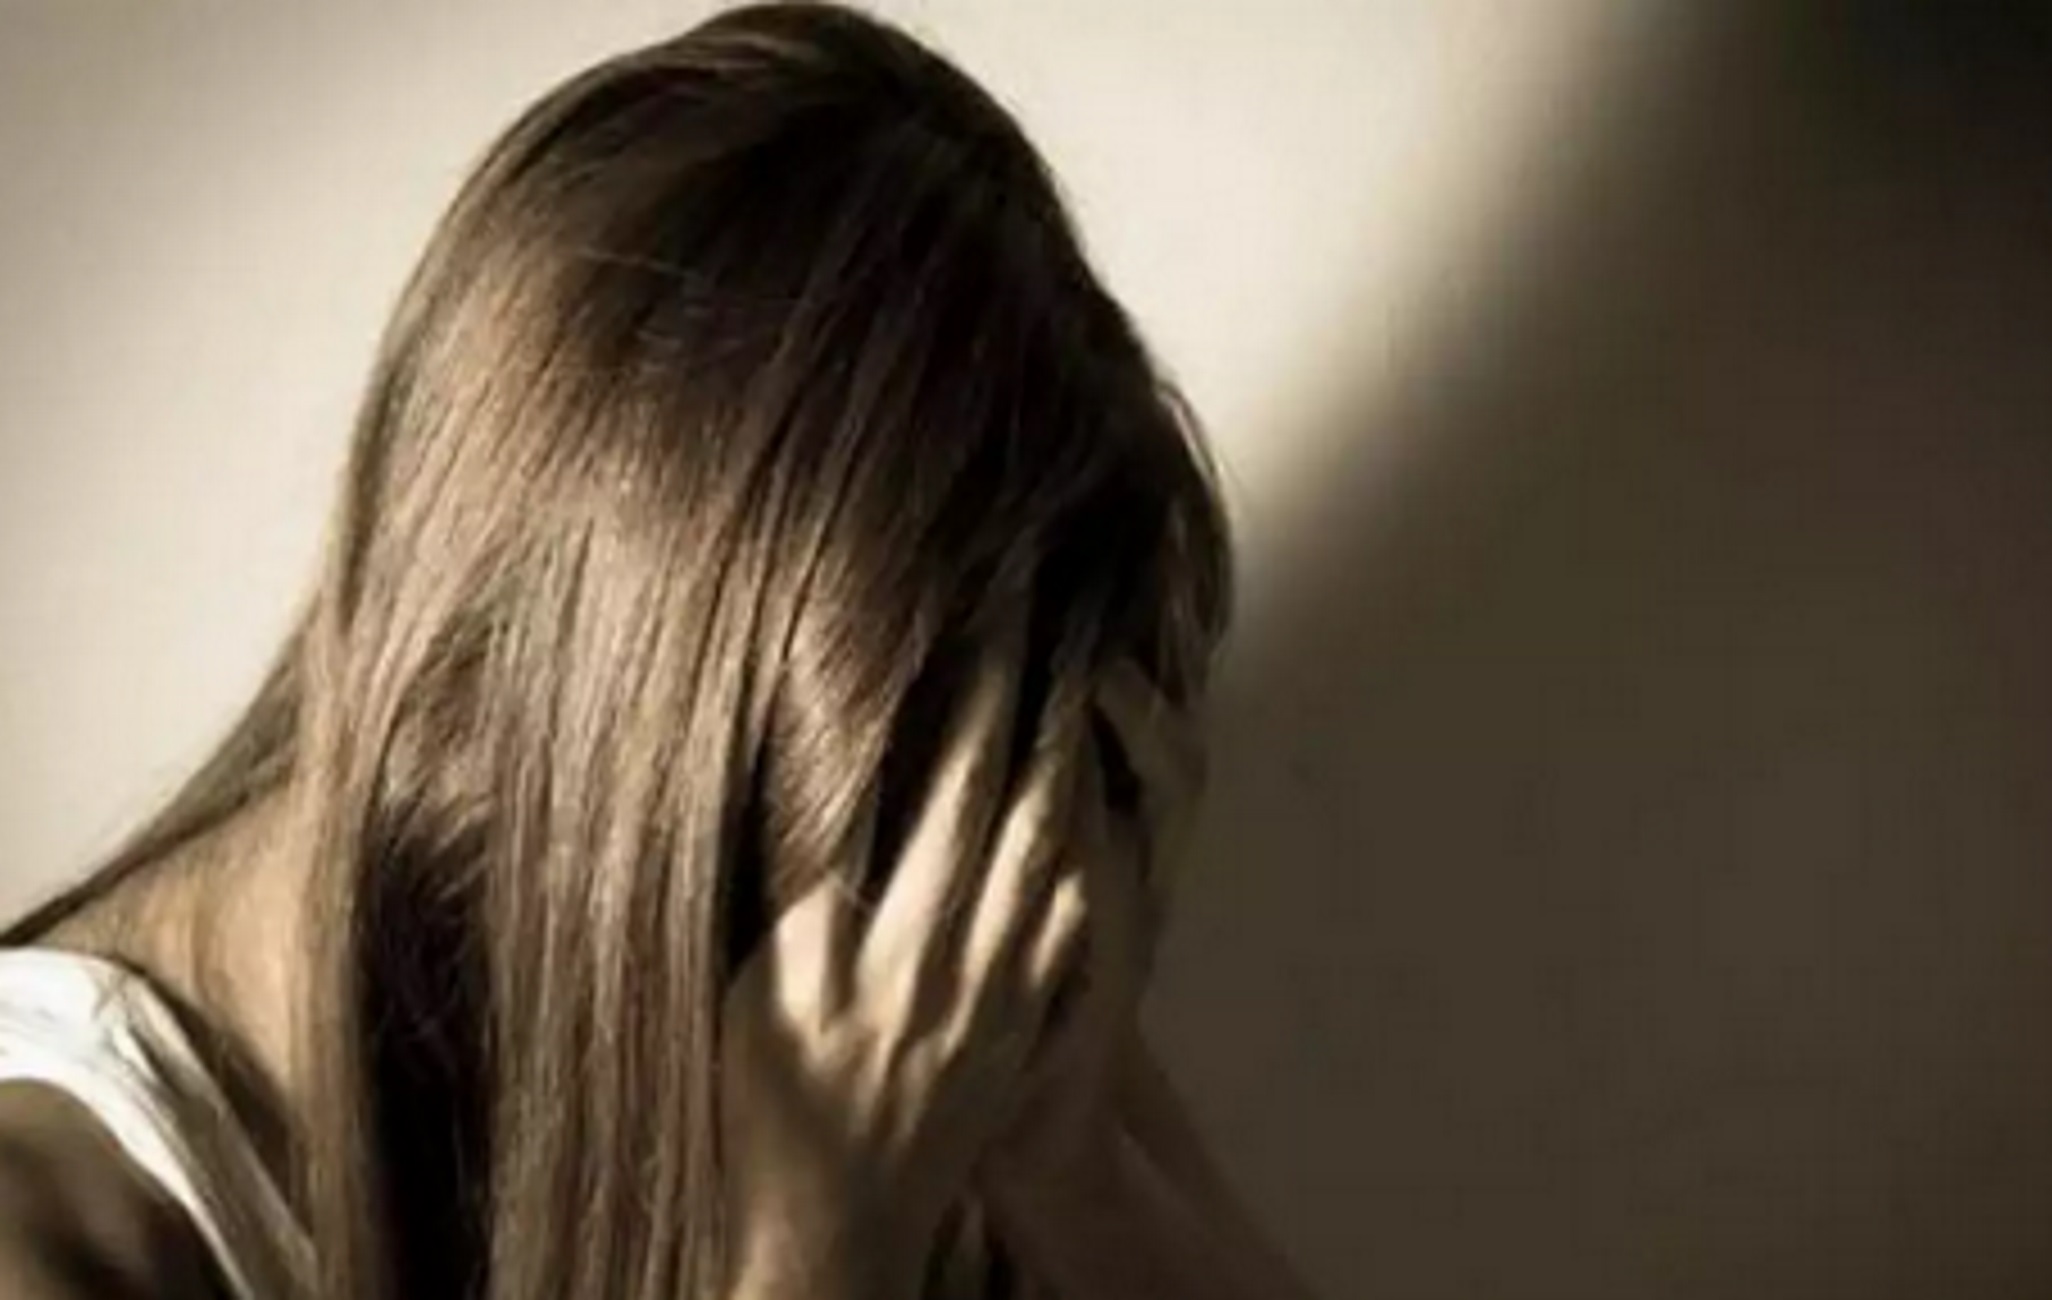 Ηράκλειο: Για βιασμό 13χρονης ο πατριός – Την κακοποιούσε όταν έφευγε η μητέρα απ’ το σπίτι